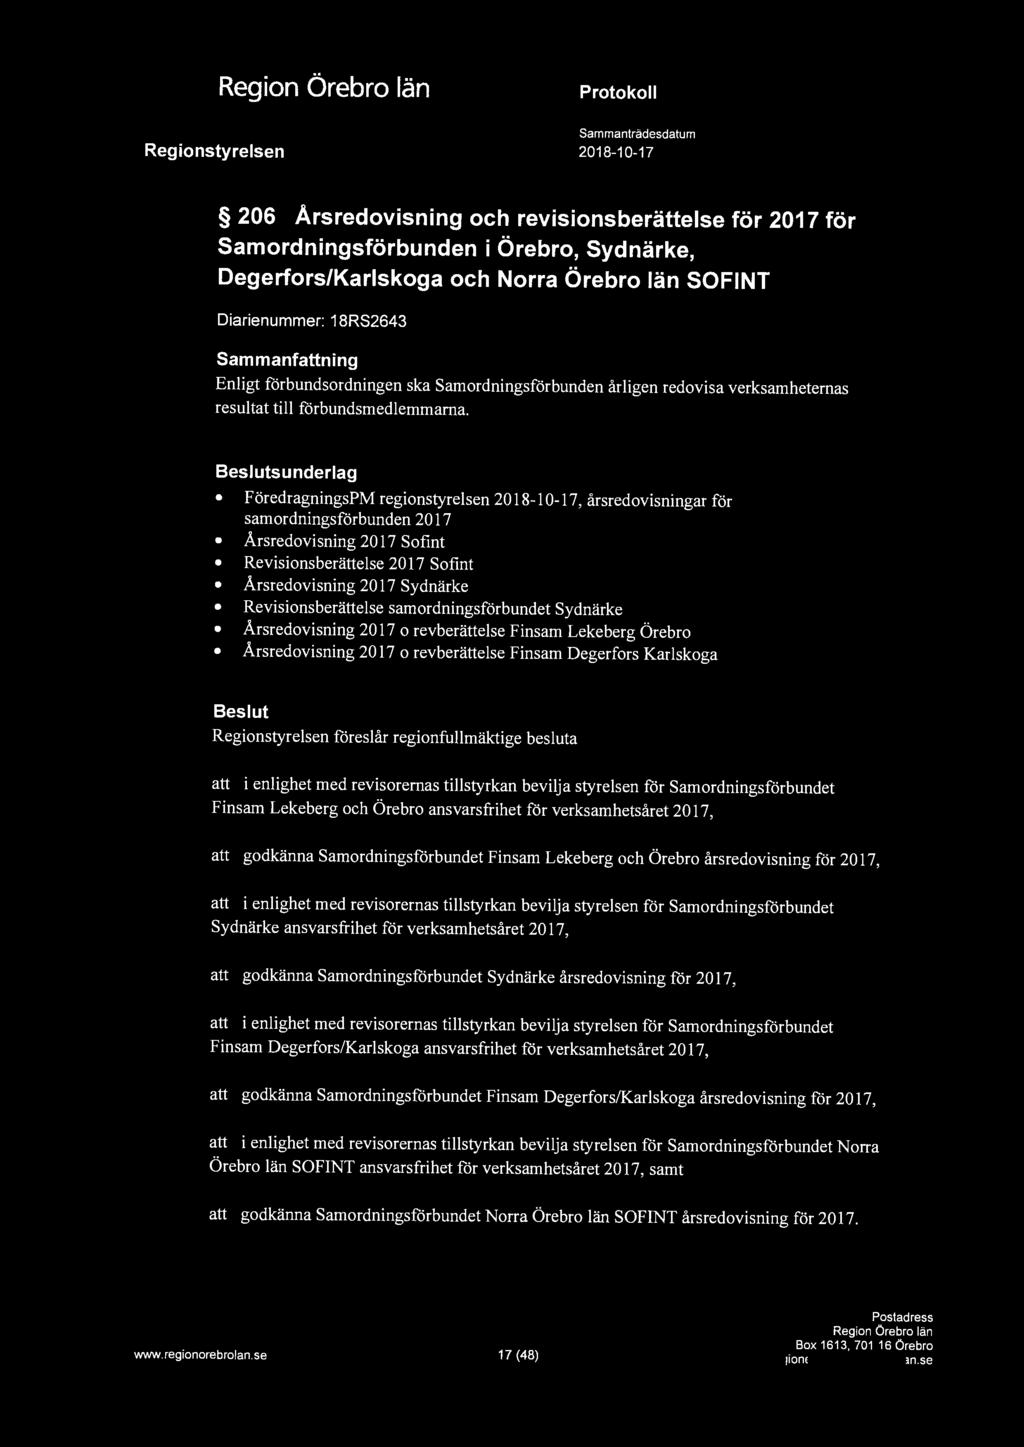 a 206 Årsredovisning och revisionsberättelse för 2017 för Samordningsförbunden i Örebro, Sydnärke, Degerfors/Karlskoga och Norra Örebro län SOFINT Diarienummer: 18RS2643 Enligt förbundsordningen ska